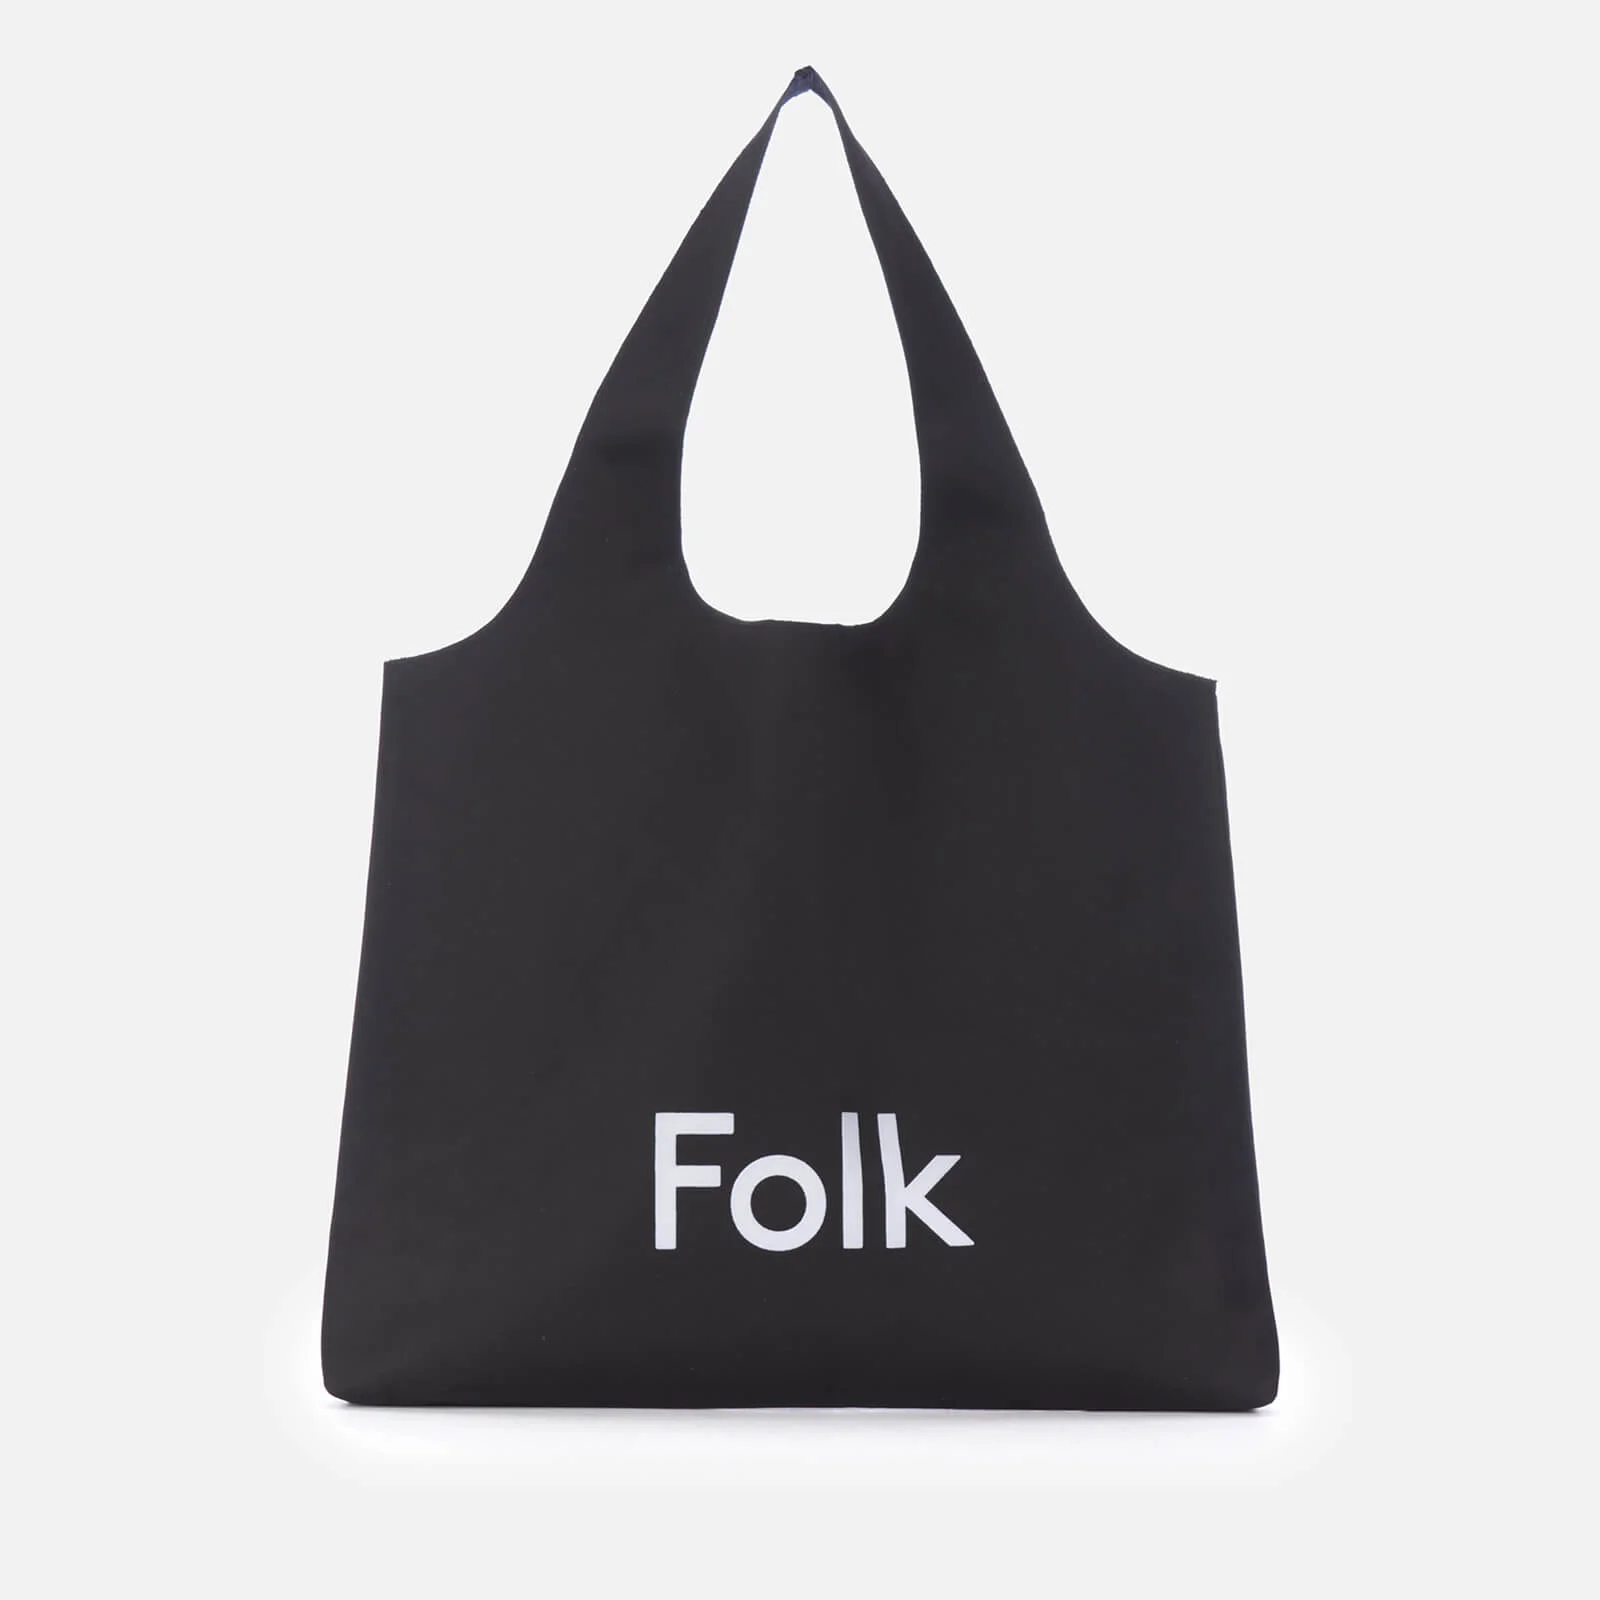 Folk Men's Tote Bag - Black Image 1